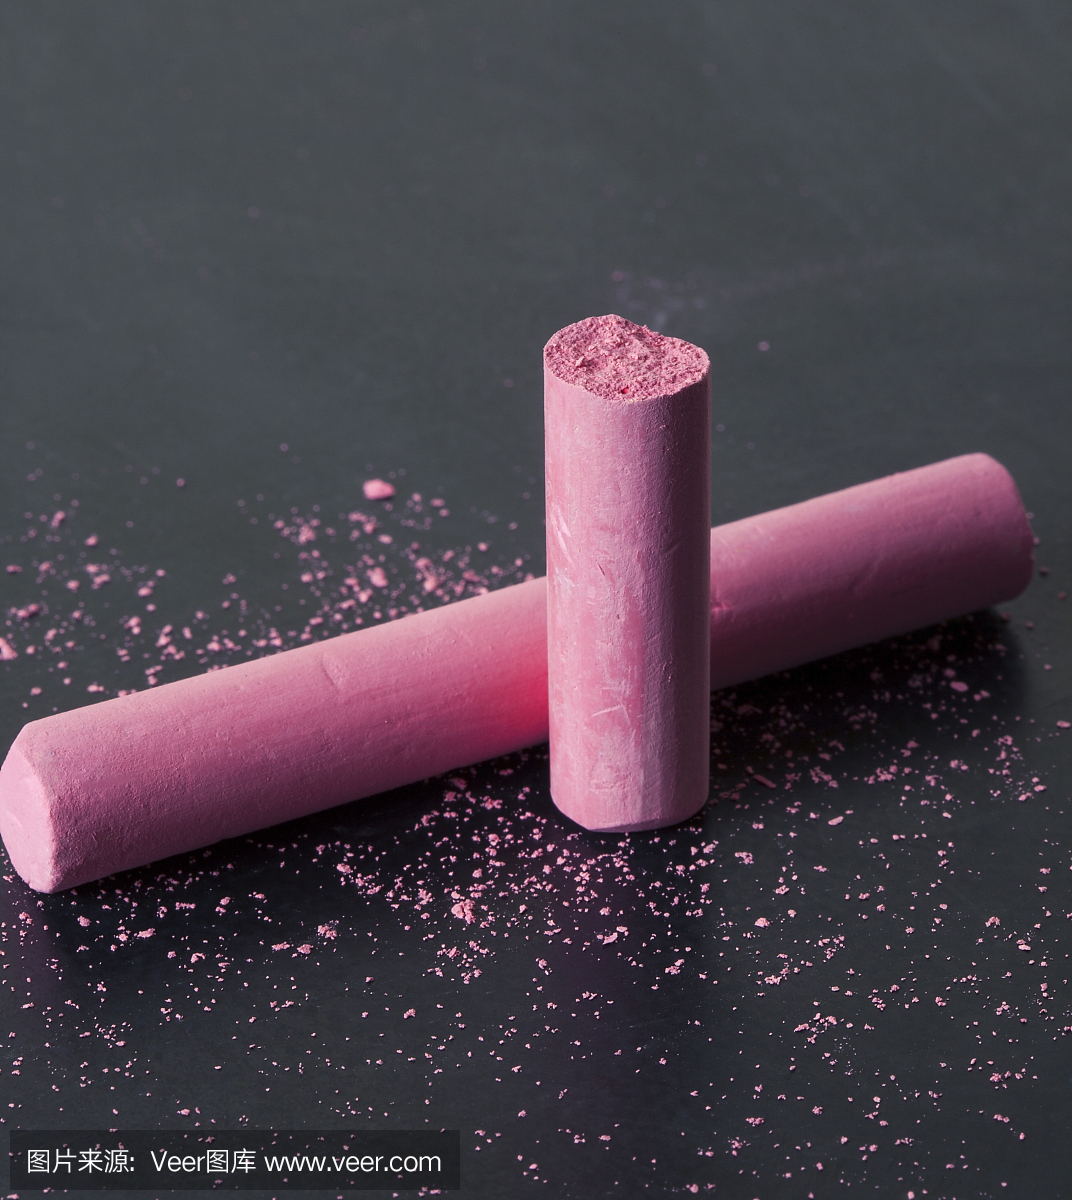 粉红色破碎的粉笔在粉笔粉笔的黑板上